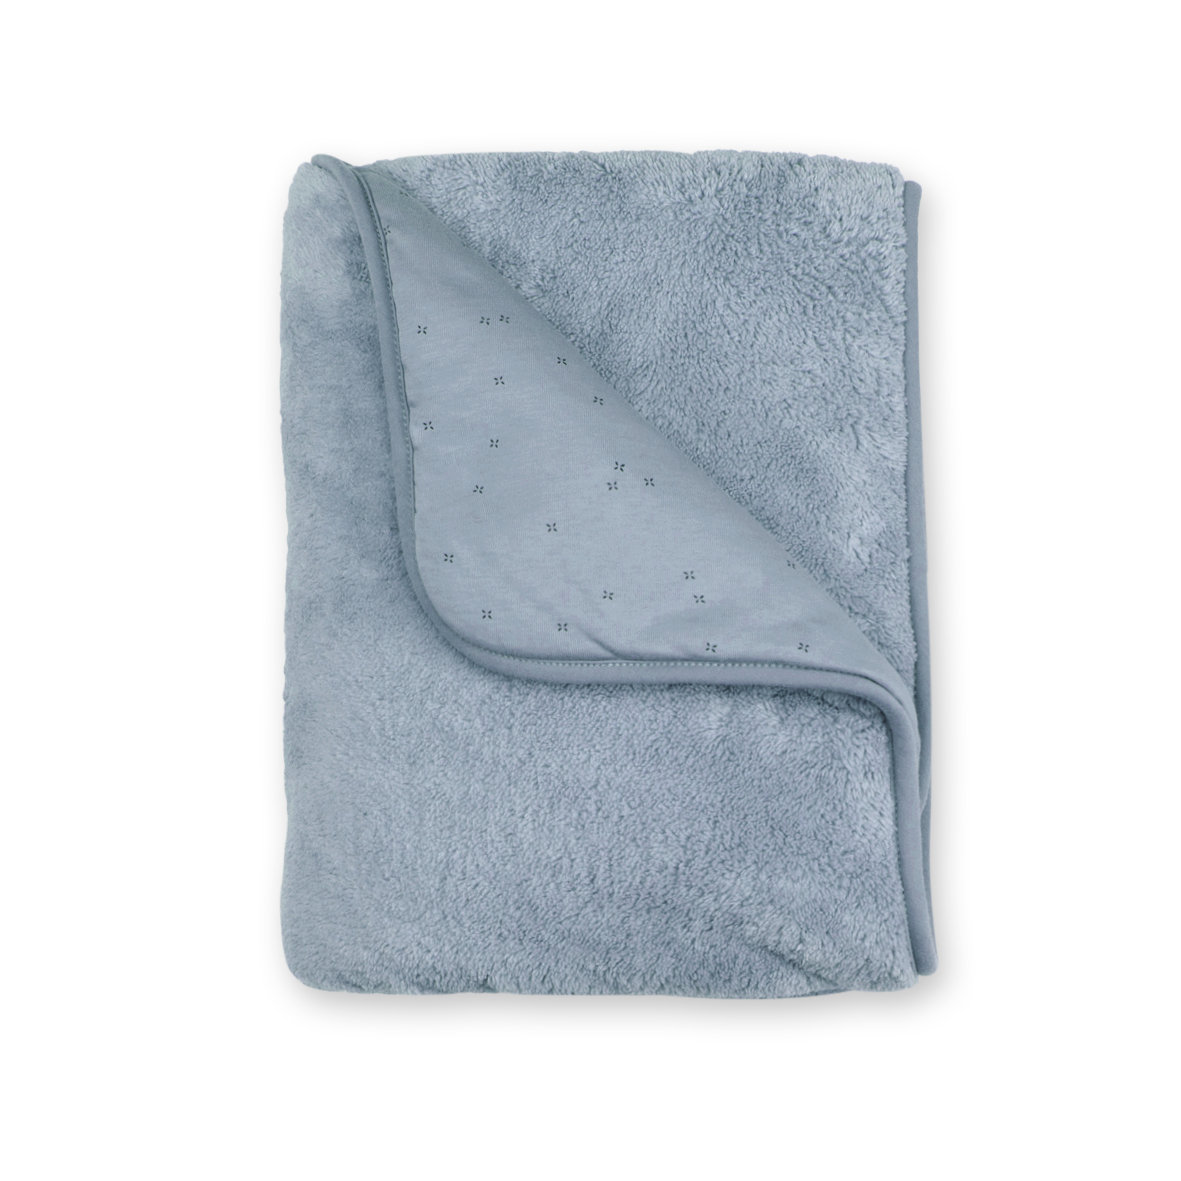 Couverture Pady jersey + softy 75x100cm BEMINI Bleu stone tog 3